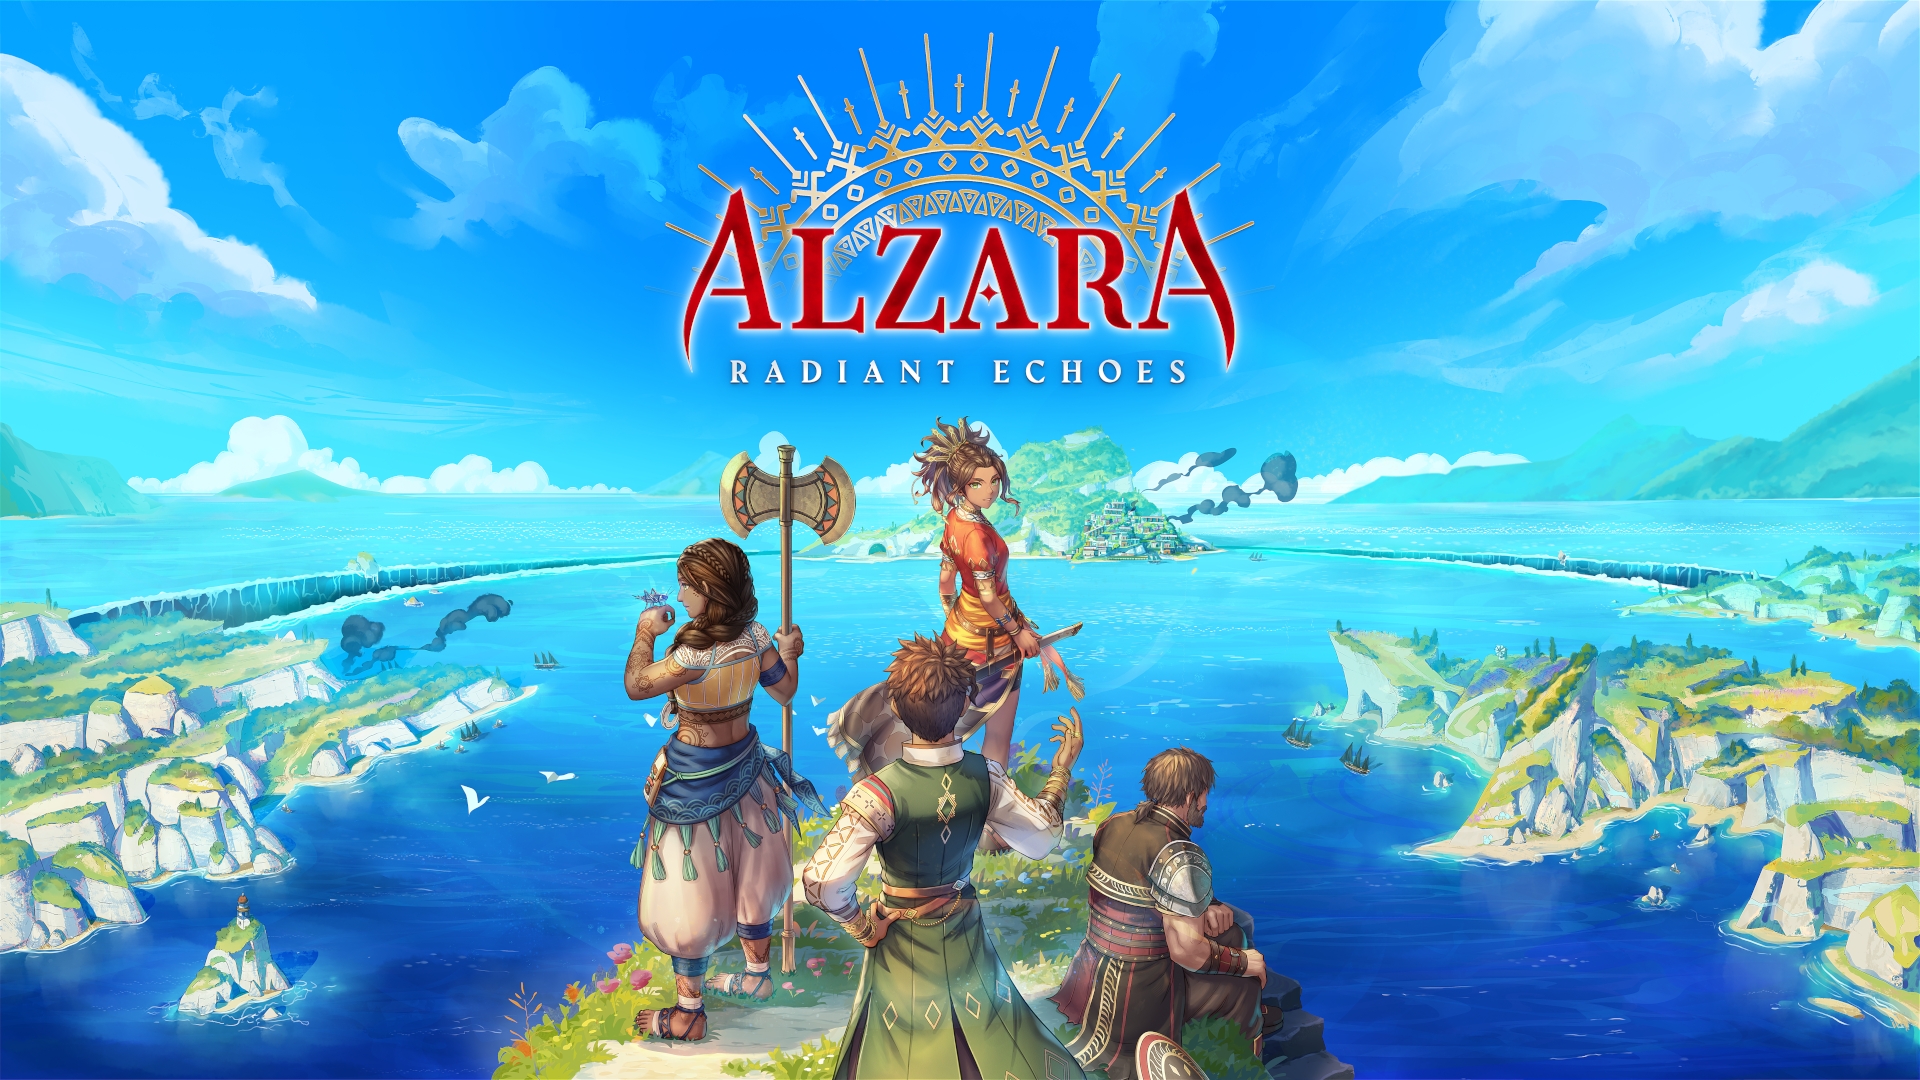 ALZARA Radiant Echoes: Golden Sun встречает Аватар, принося JRPG в Средиземноморье